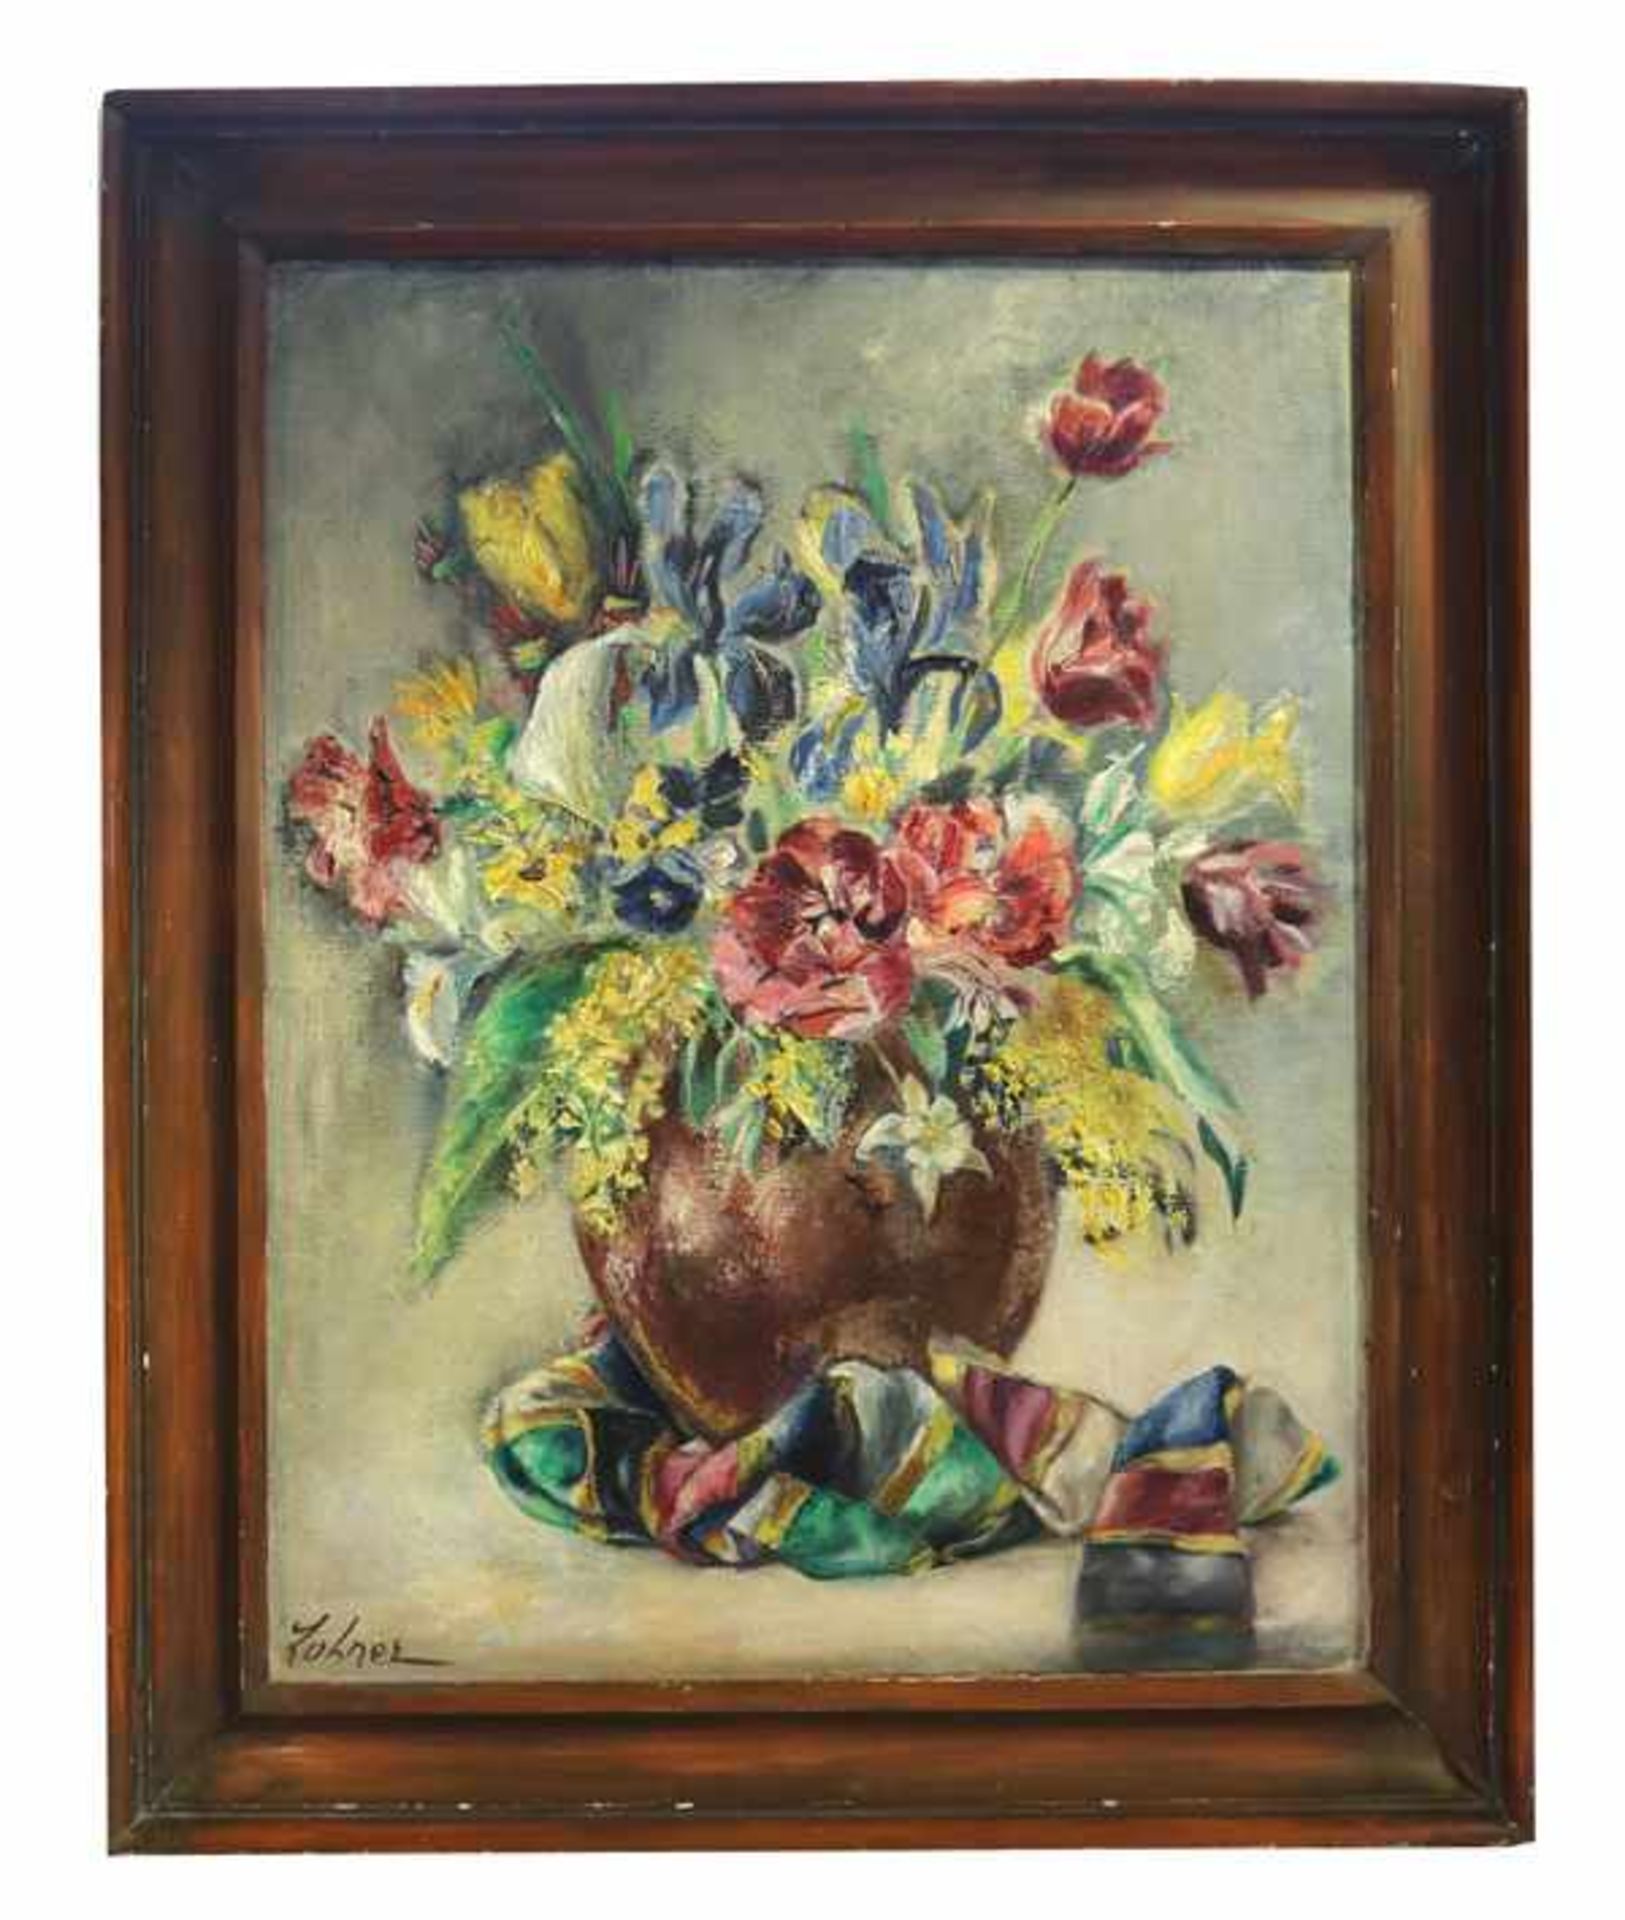 Gemälde ÖL/LW 'Blumenstillleben in Vase', signiert Lohner, gerahmt, Rahmen bestossen, incl. Rahmen